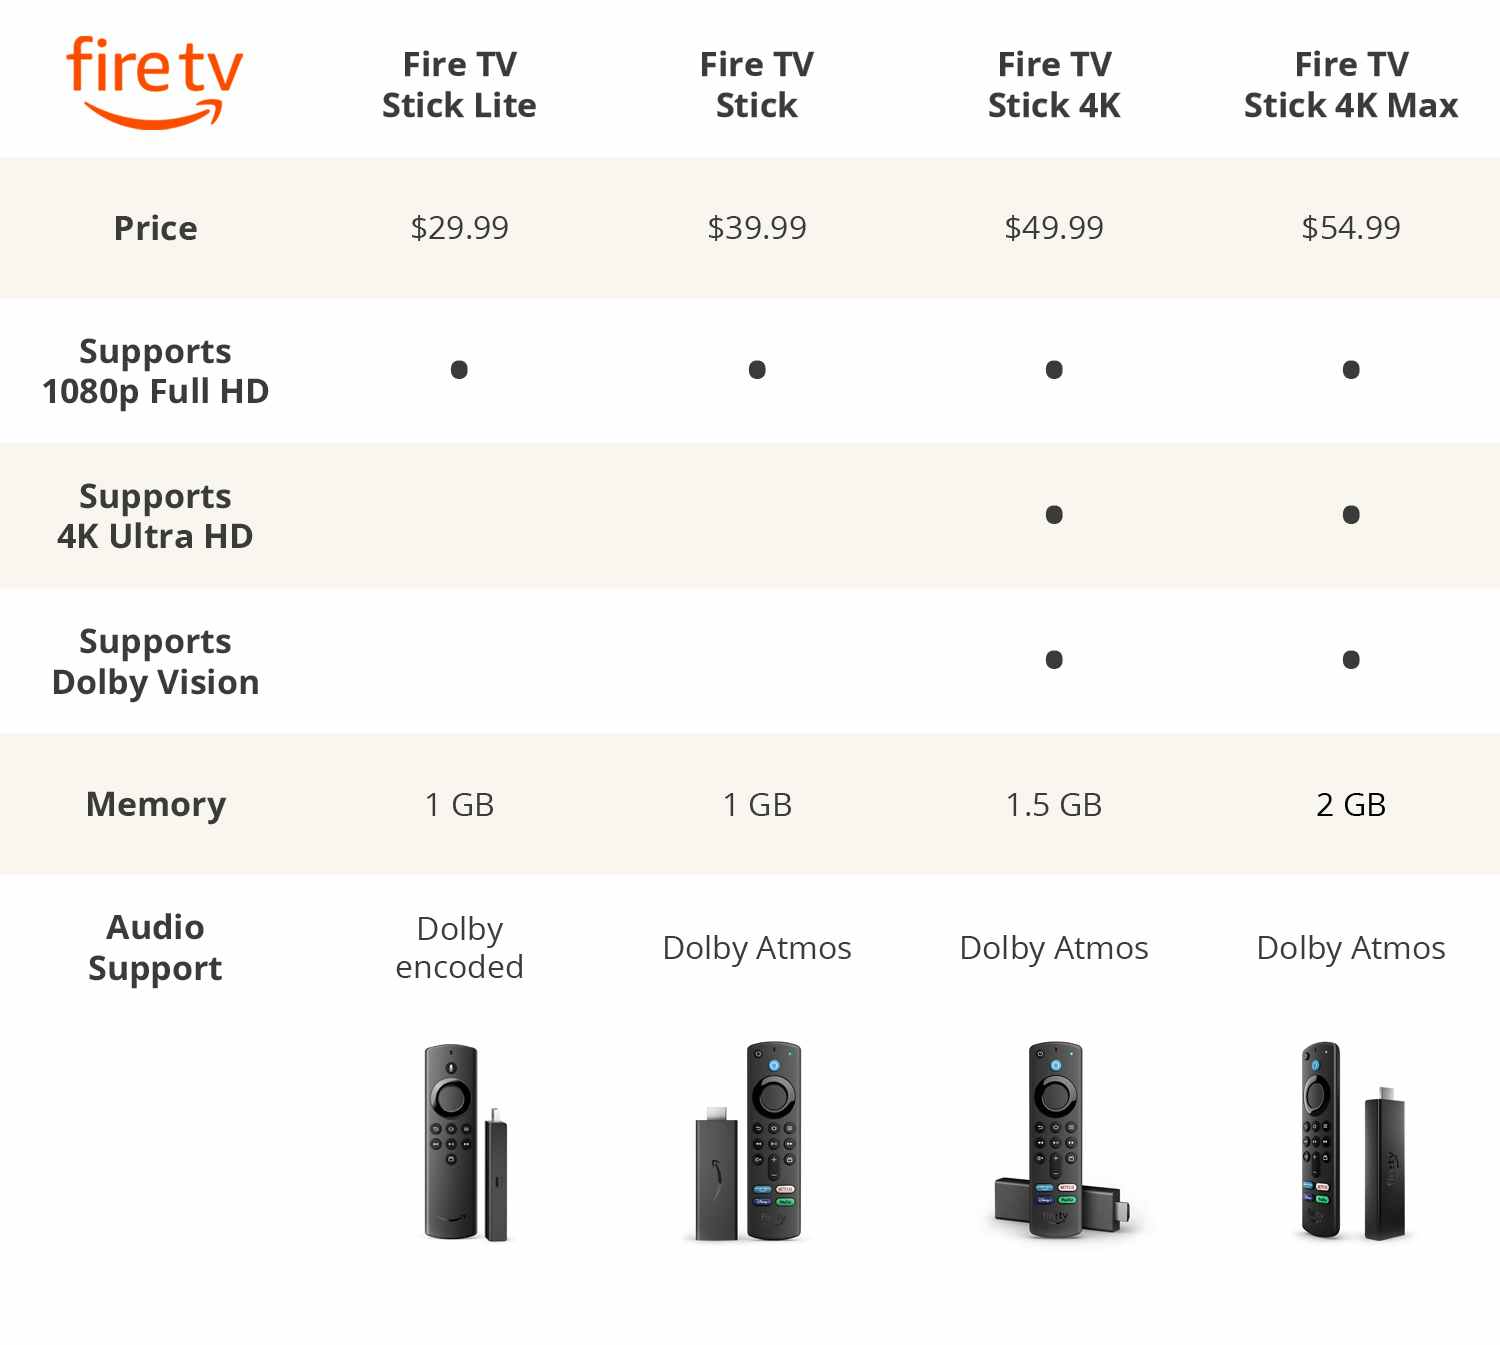 Amazon Fire TV product comparison guide